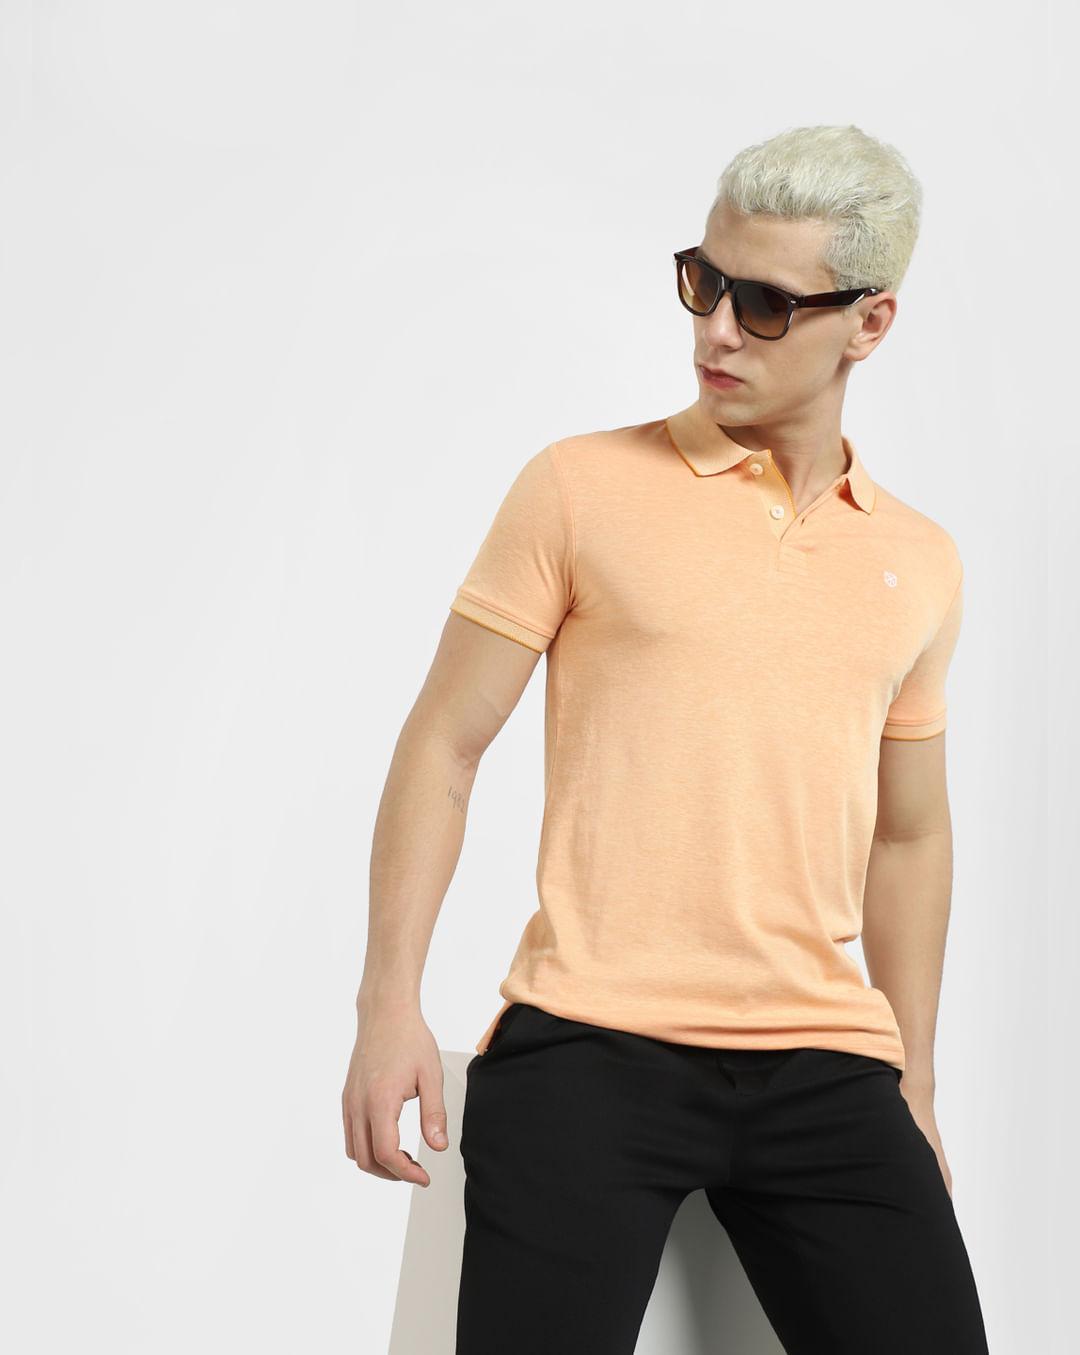 orange polo neck t-shirt